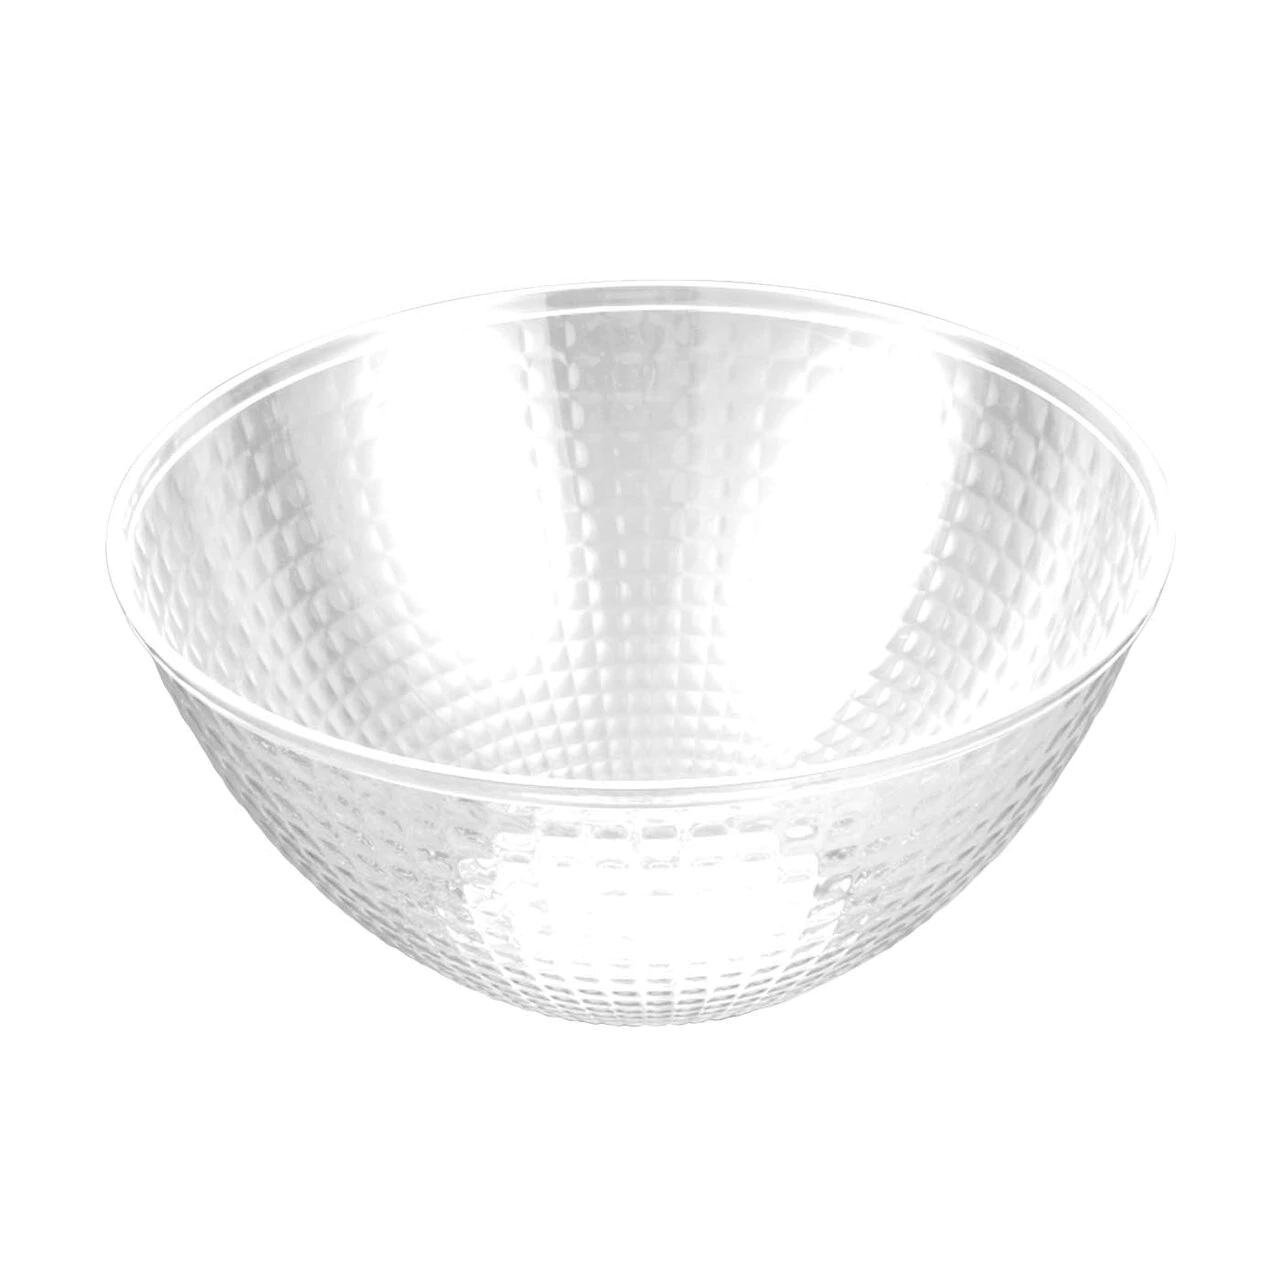 White 96 oz. Diamond Design Round Disposable Plastic Bowls - Set With Style